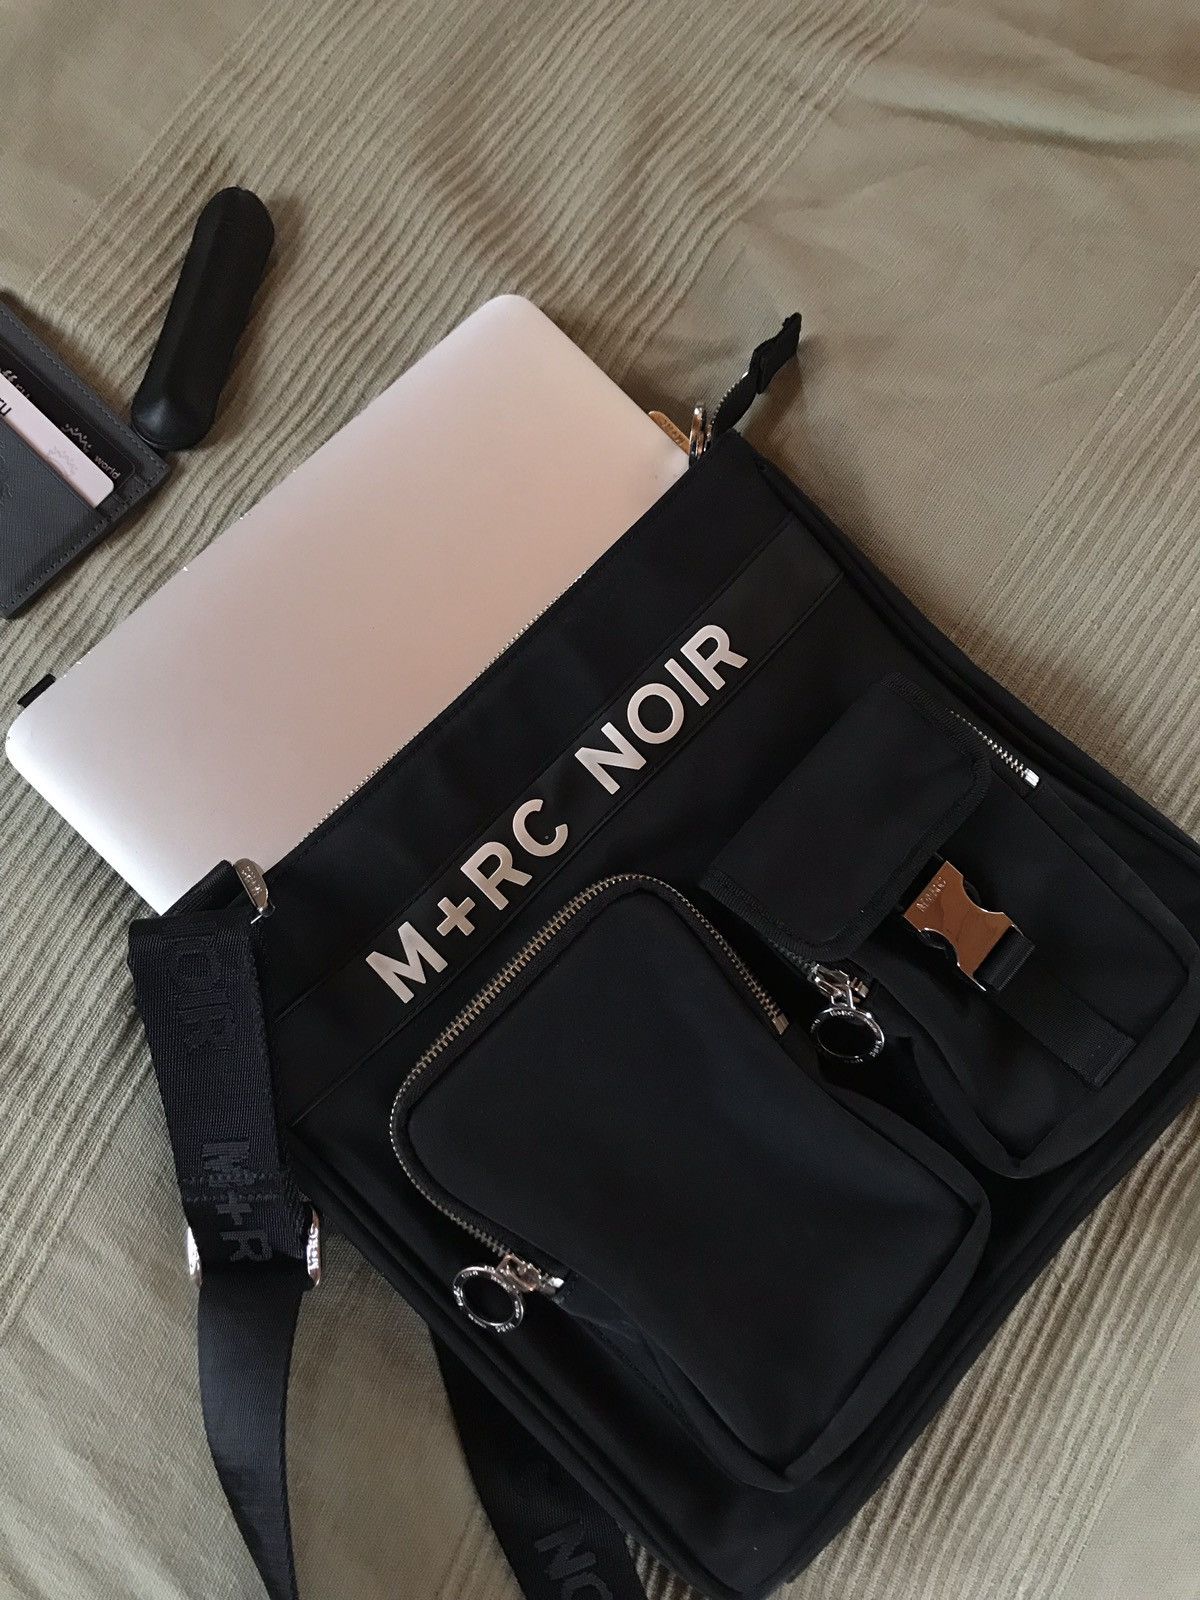 M+Rc Noir M+RC NOIR MAC-10 Messenger Bag | Grailed